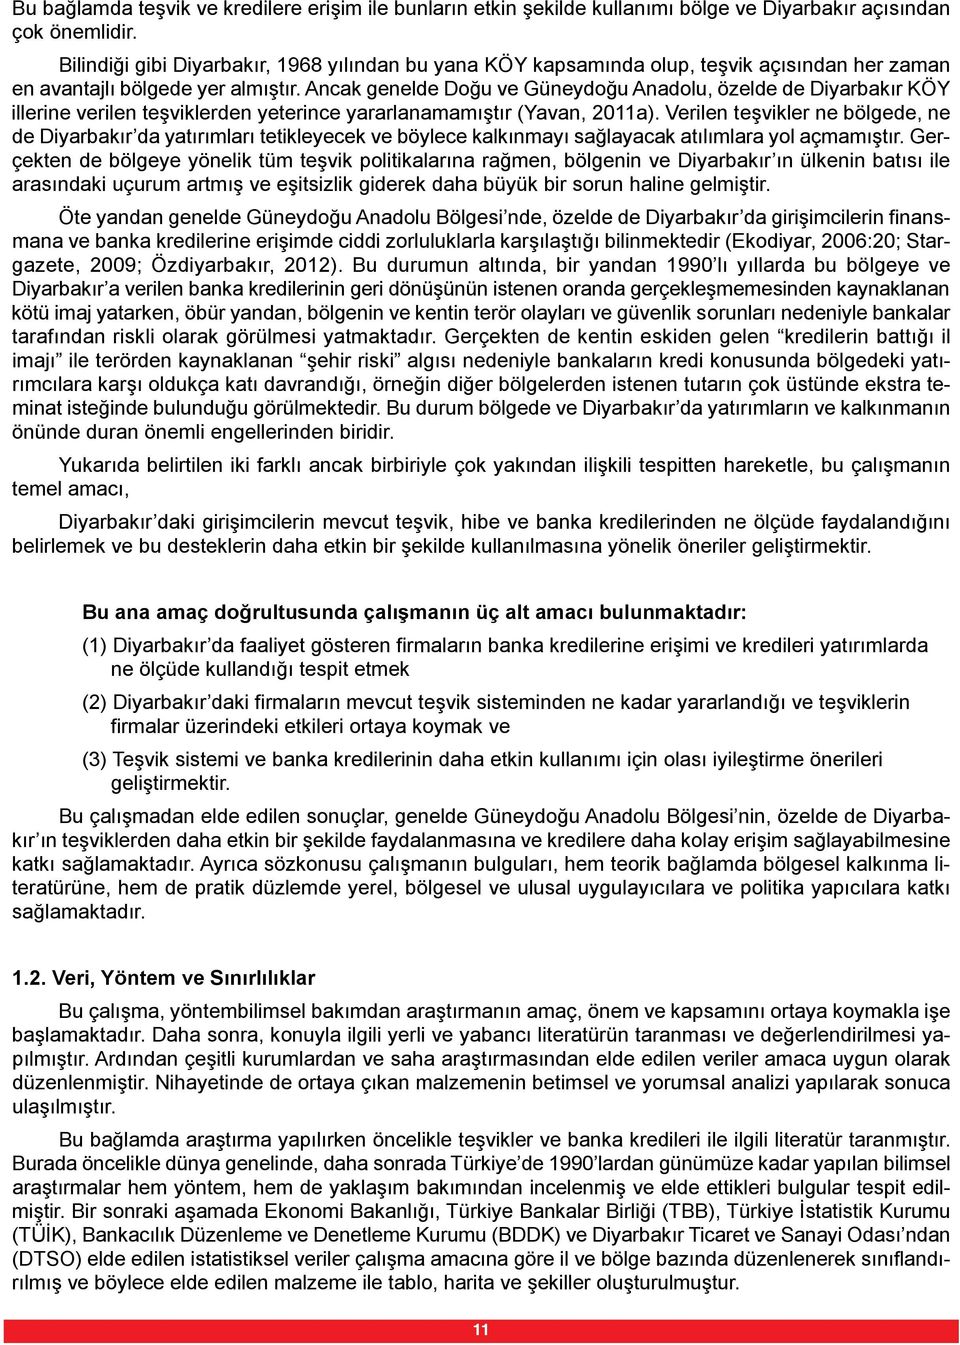 Ancak genelde Doğu ve Güneydoğu Anadolu, özelde de Diyarbakır KÖY illerine verilen teşviklerden yeterince yararlanamamıştır (Yavan, 2011a).